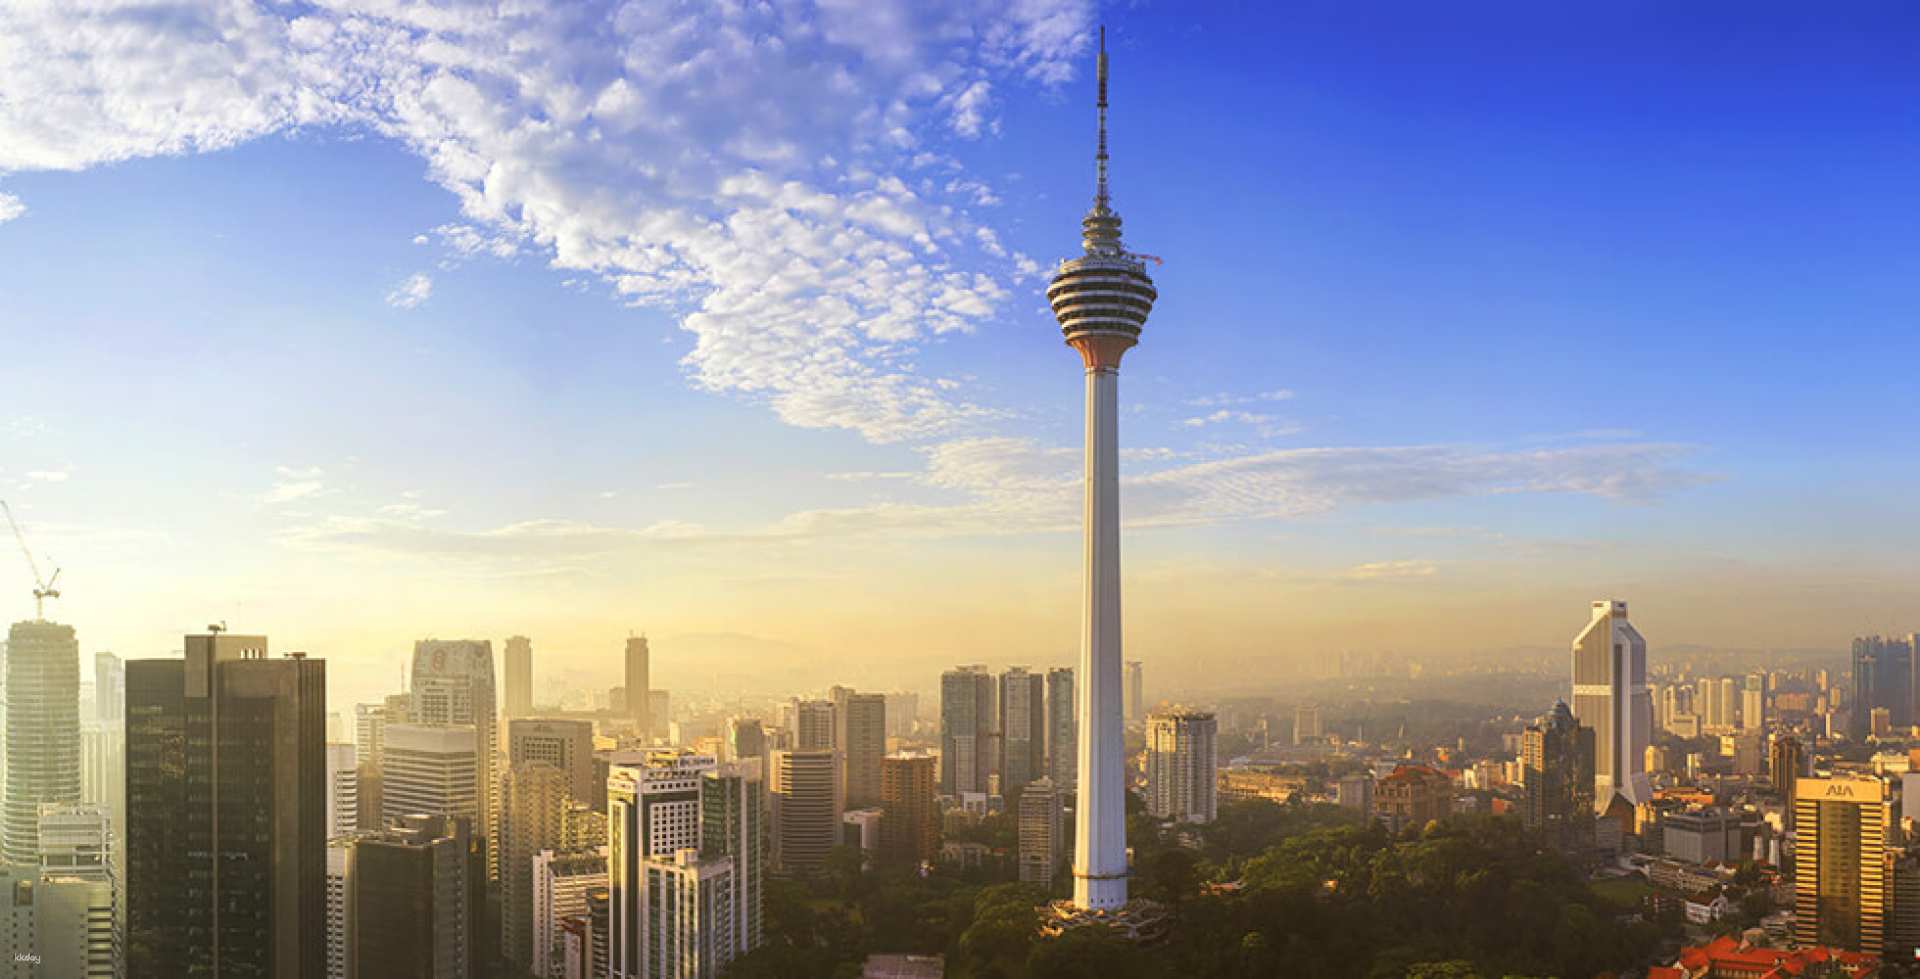 馬來西亞-吉隆坡塔觀景台&Sky Deck 和 Sky Box 門票| 限時優惠